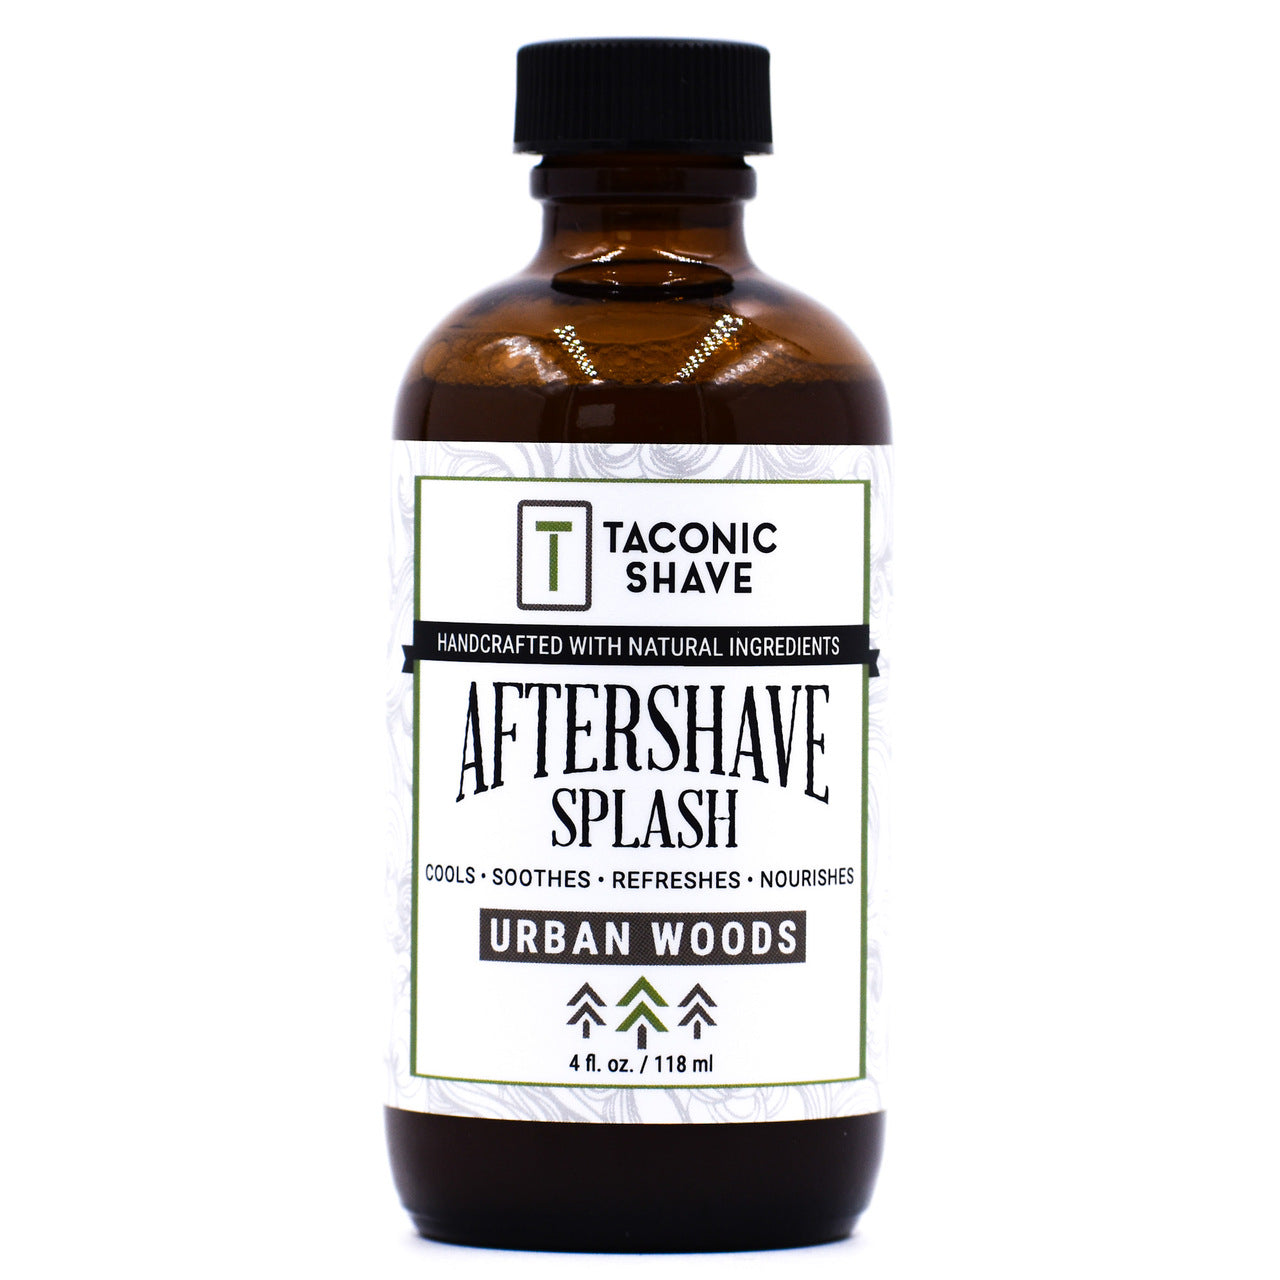 Taconic Shave Botanical Aftershave Splash - Urban Woods - 4 Onzas